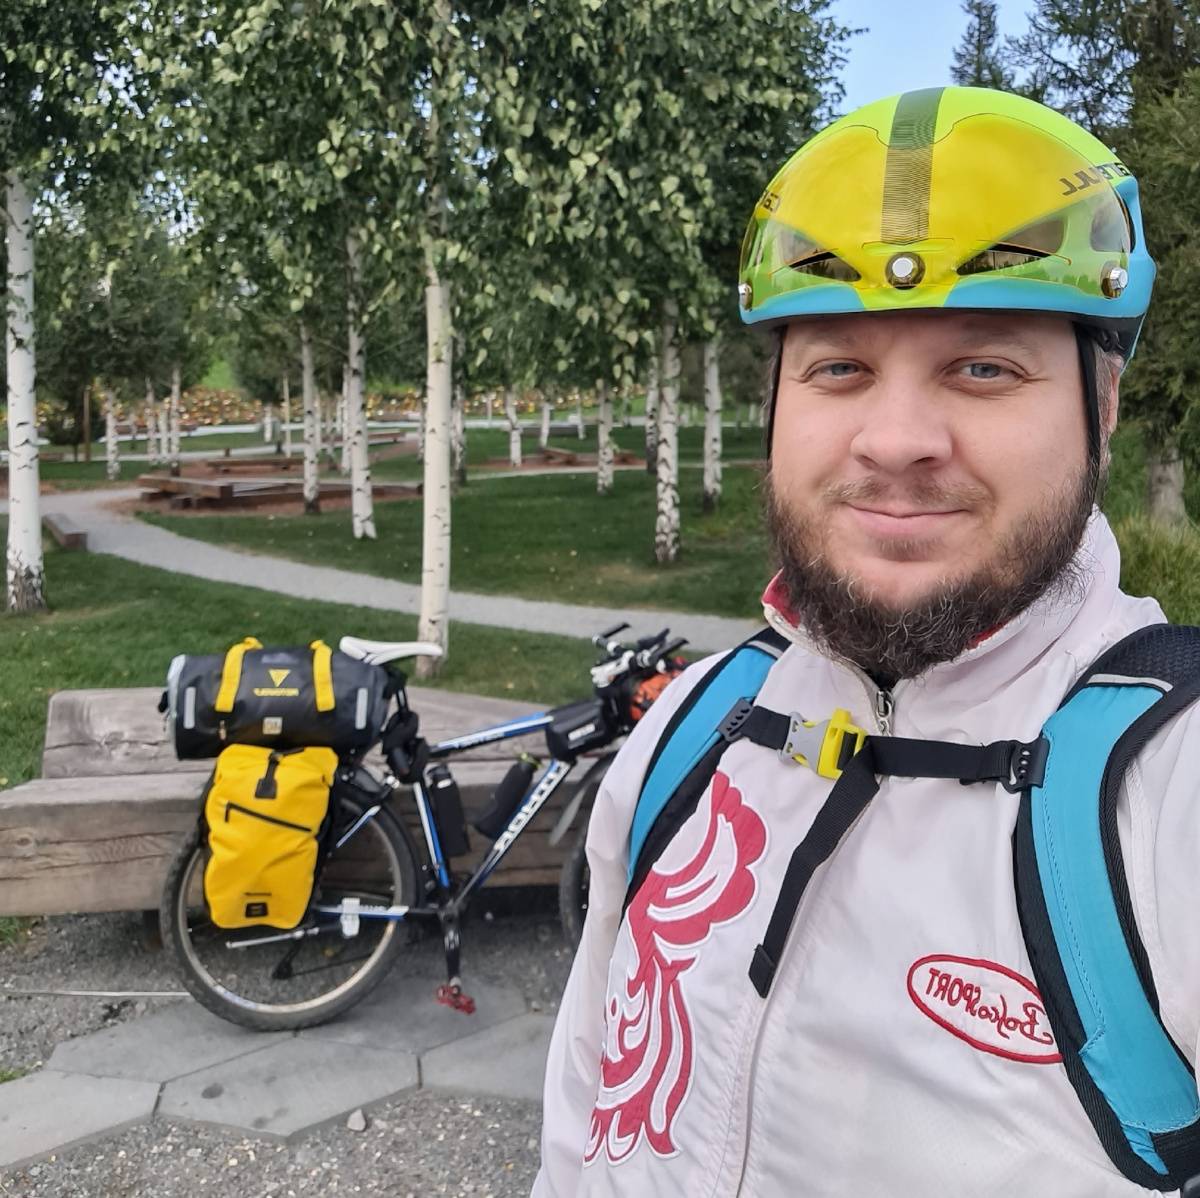 Обо всём, что увидел и с чем столкнулся на маршруте, велопутешественник Денис Панфилов рассказывает в социальных сетях.